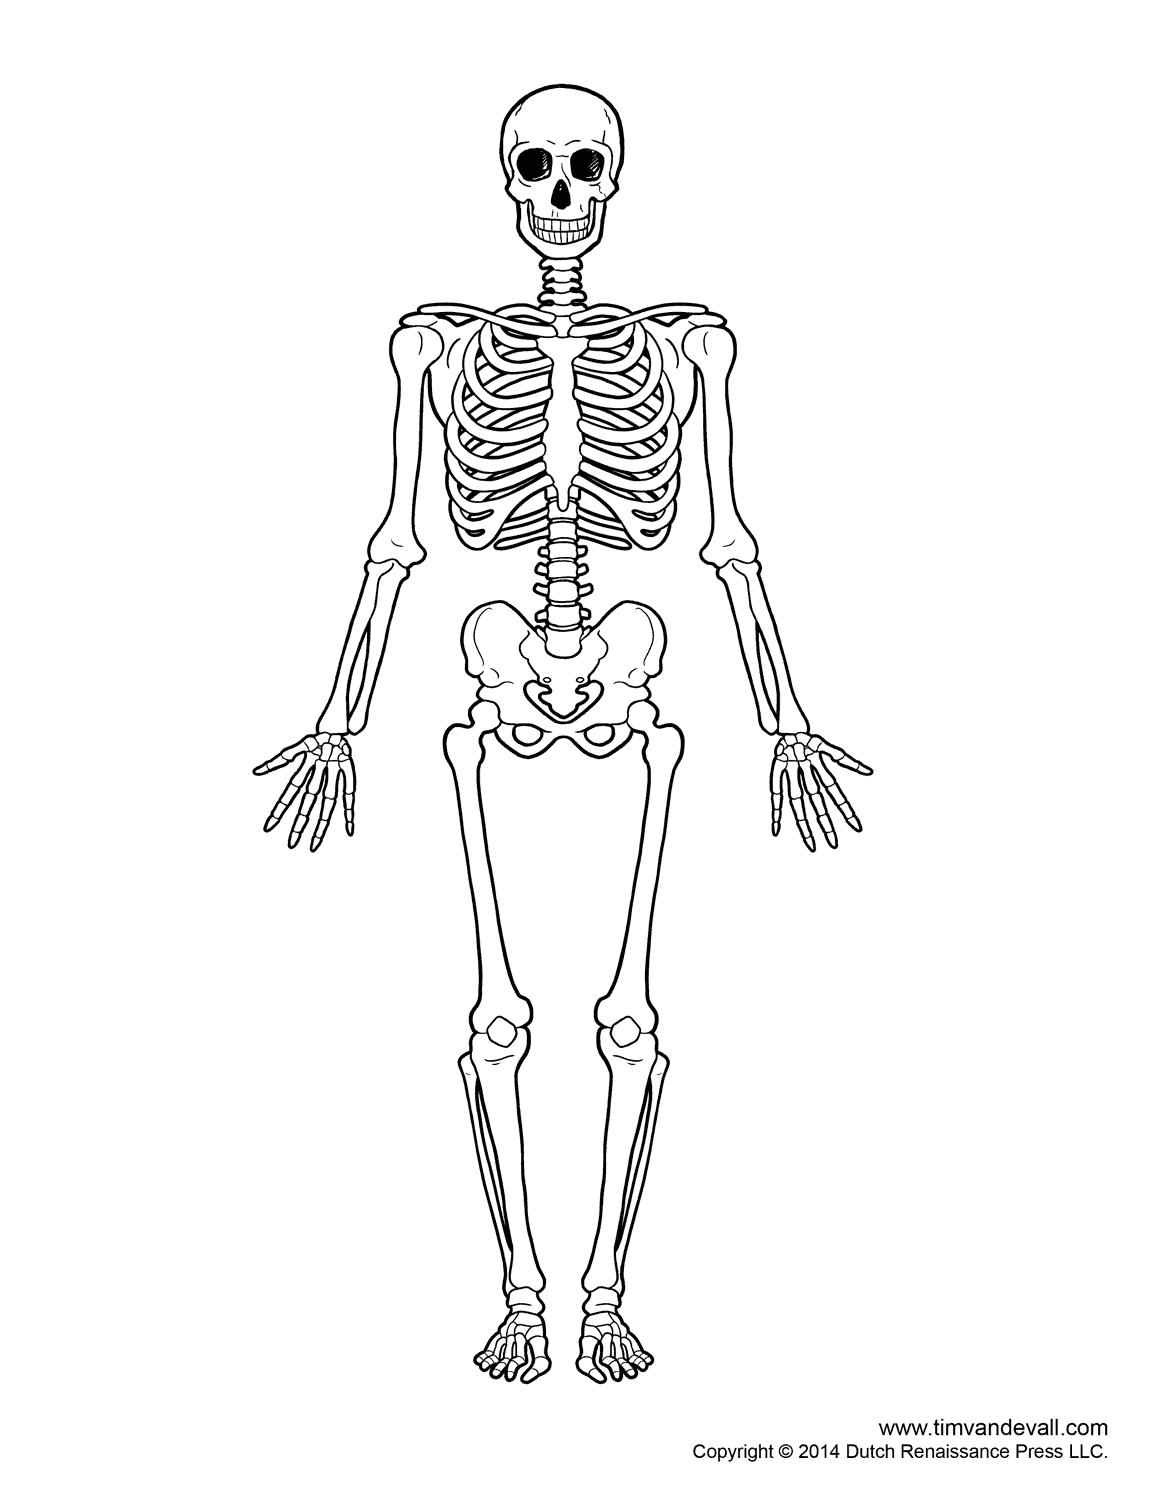 Insane Skeleton Drawing  rdrawing